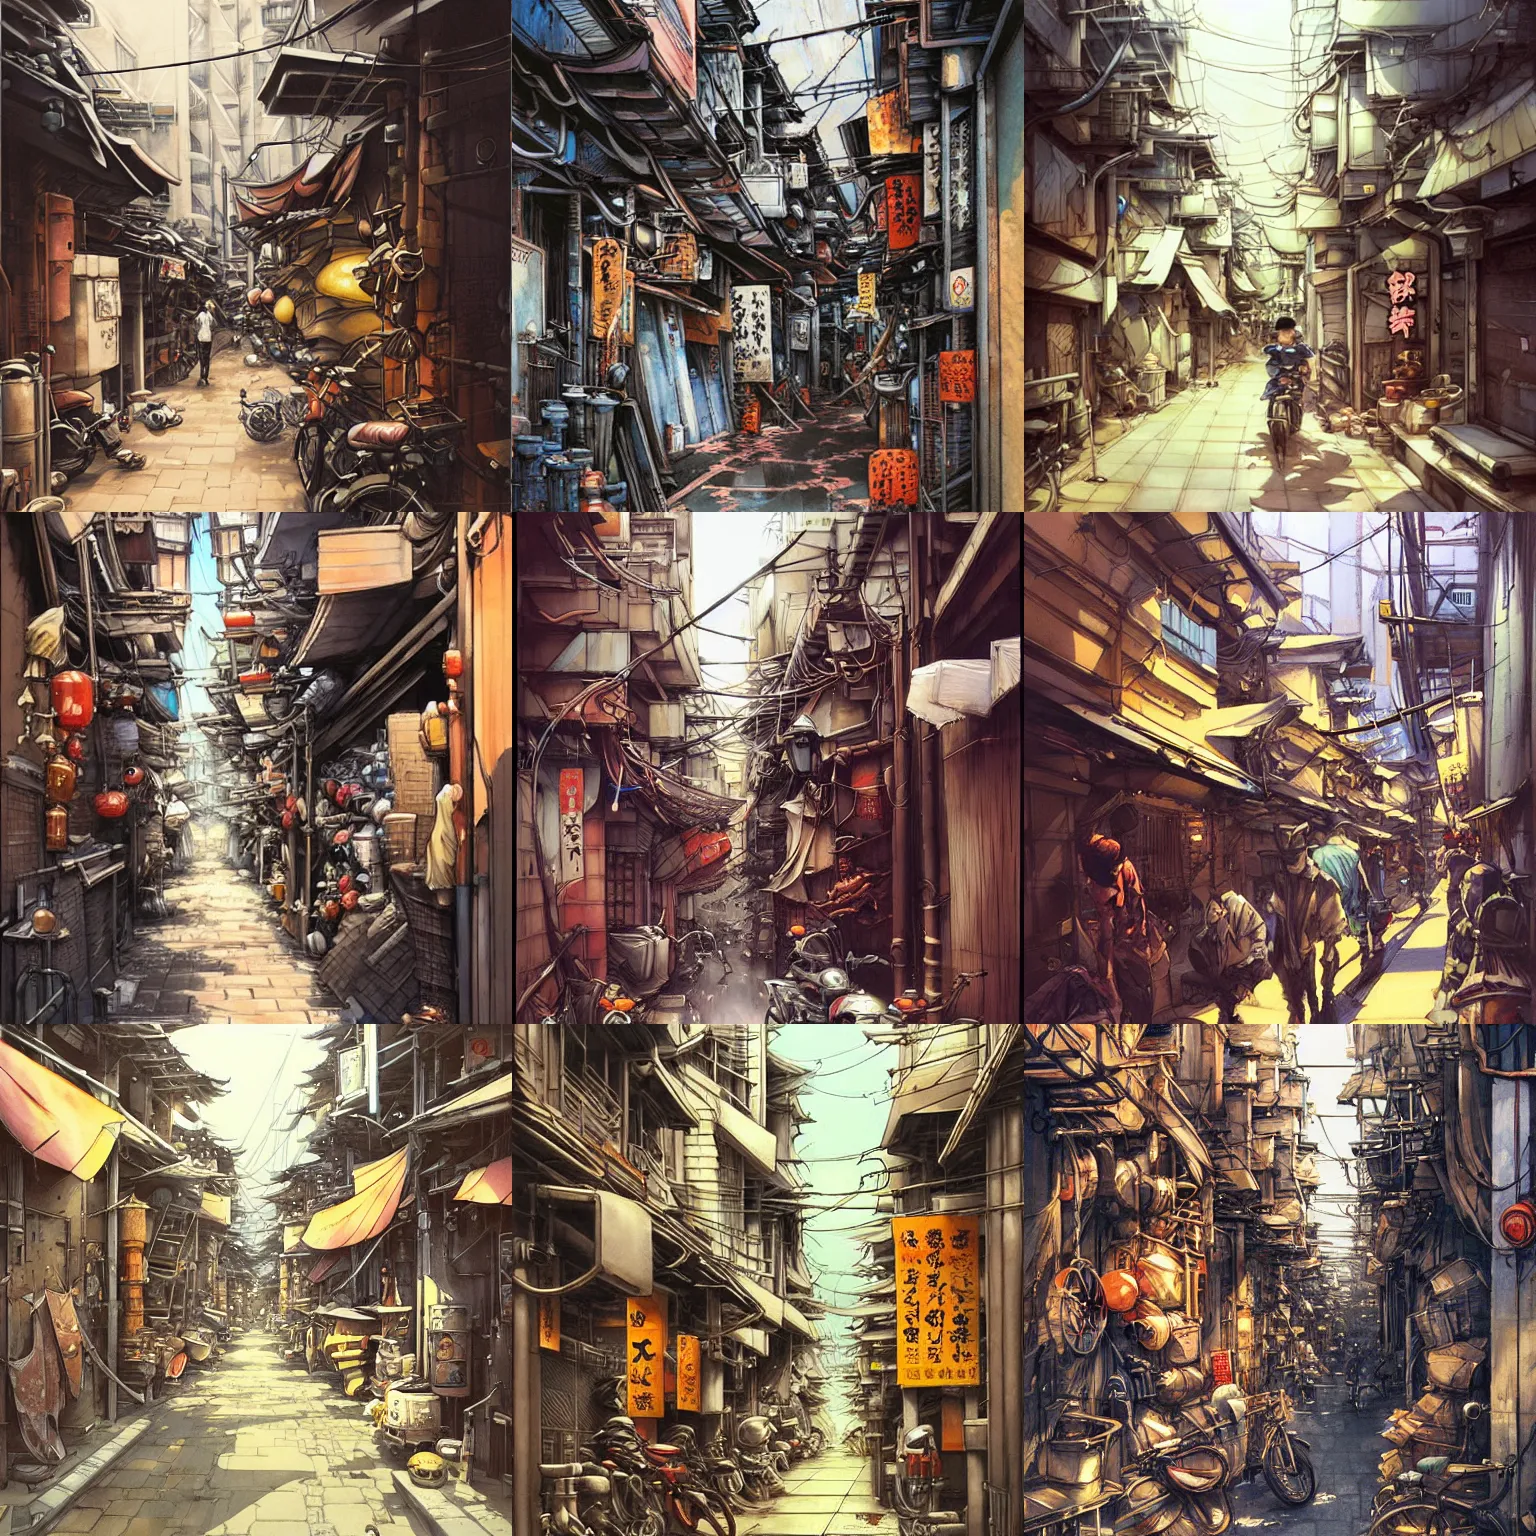 Prompt: tokyo alleyway by jesper ejsing, beautiful